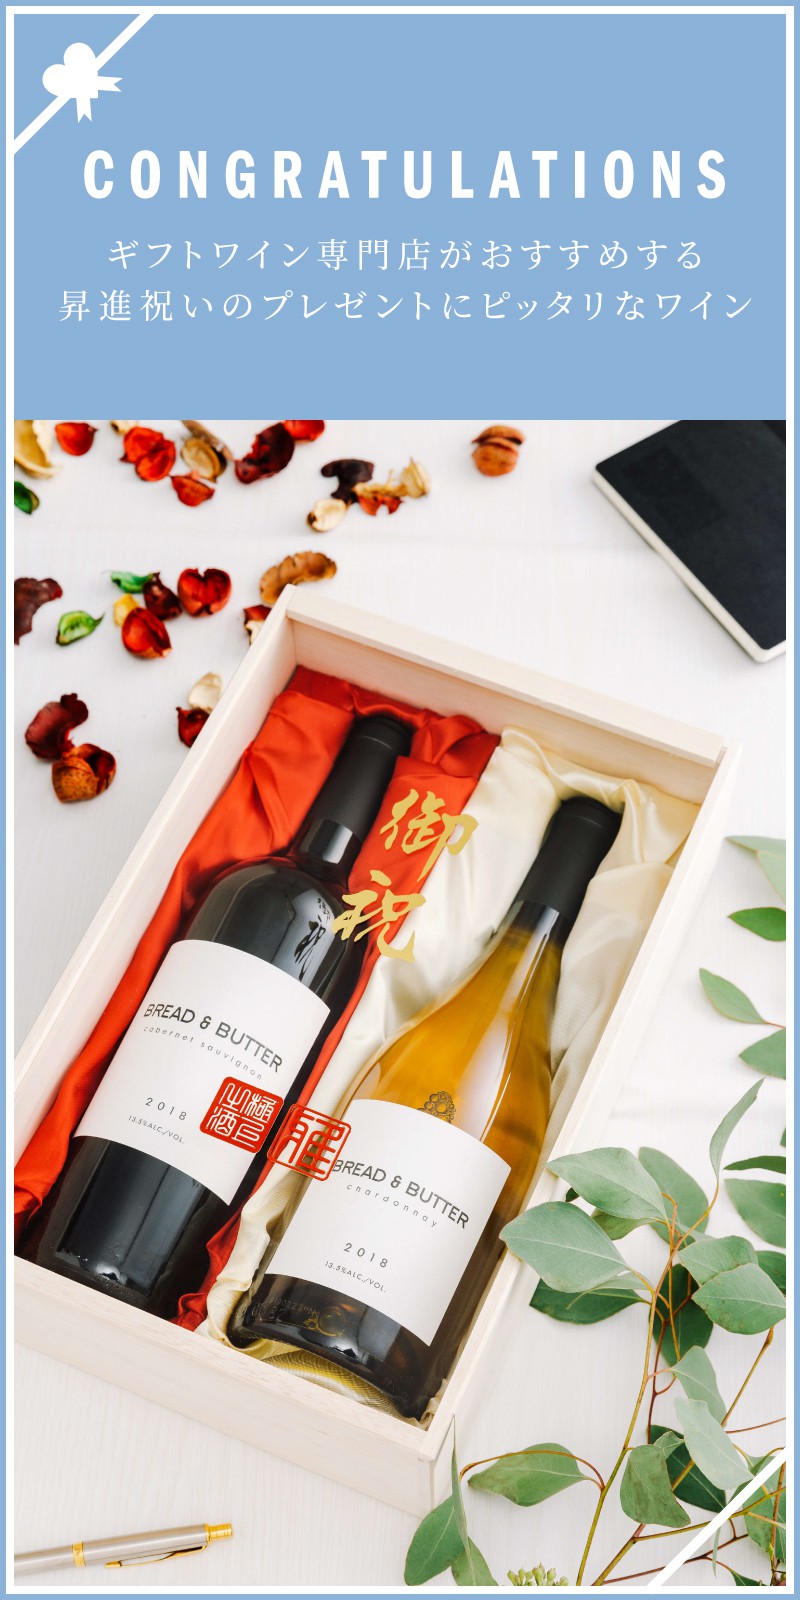 昇進 昇格祝い 栄転祝いのプレゼント ワイン人気ランキング 2020 ワイン通販 Lovewine ラブワイン